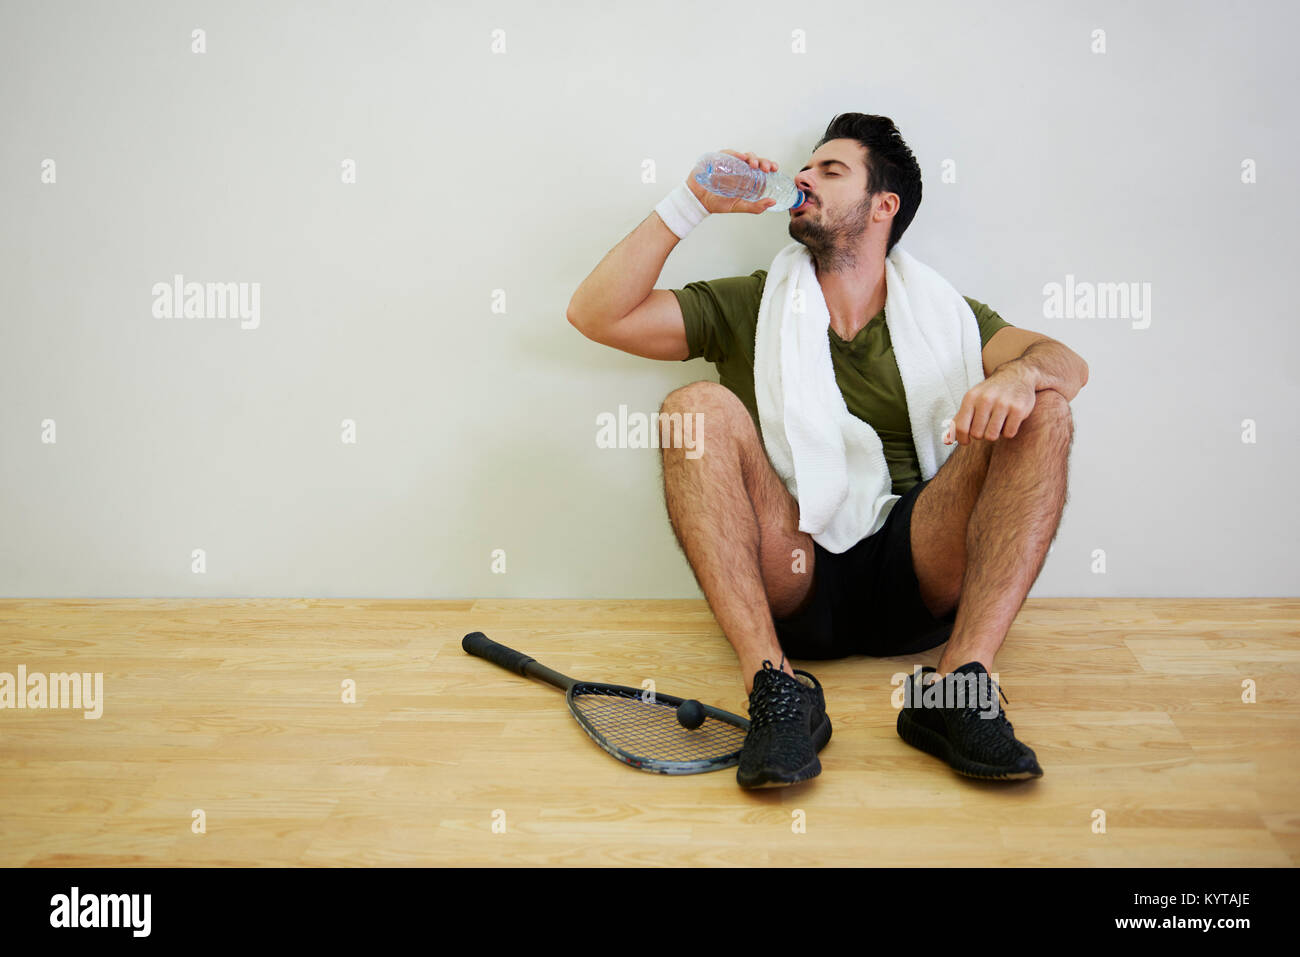 Joueuse de squash masculin de l'eau potable Banque D'Images